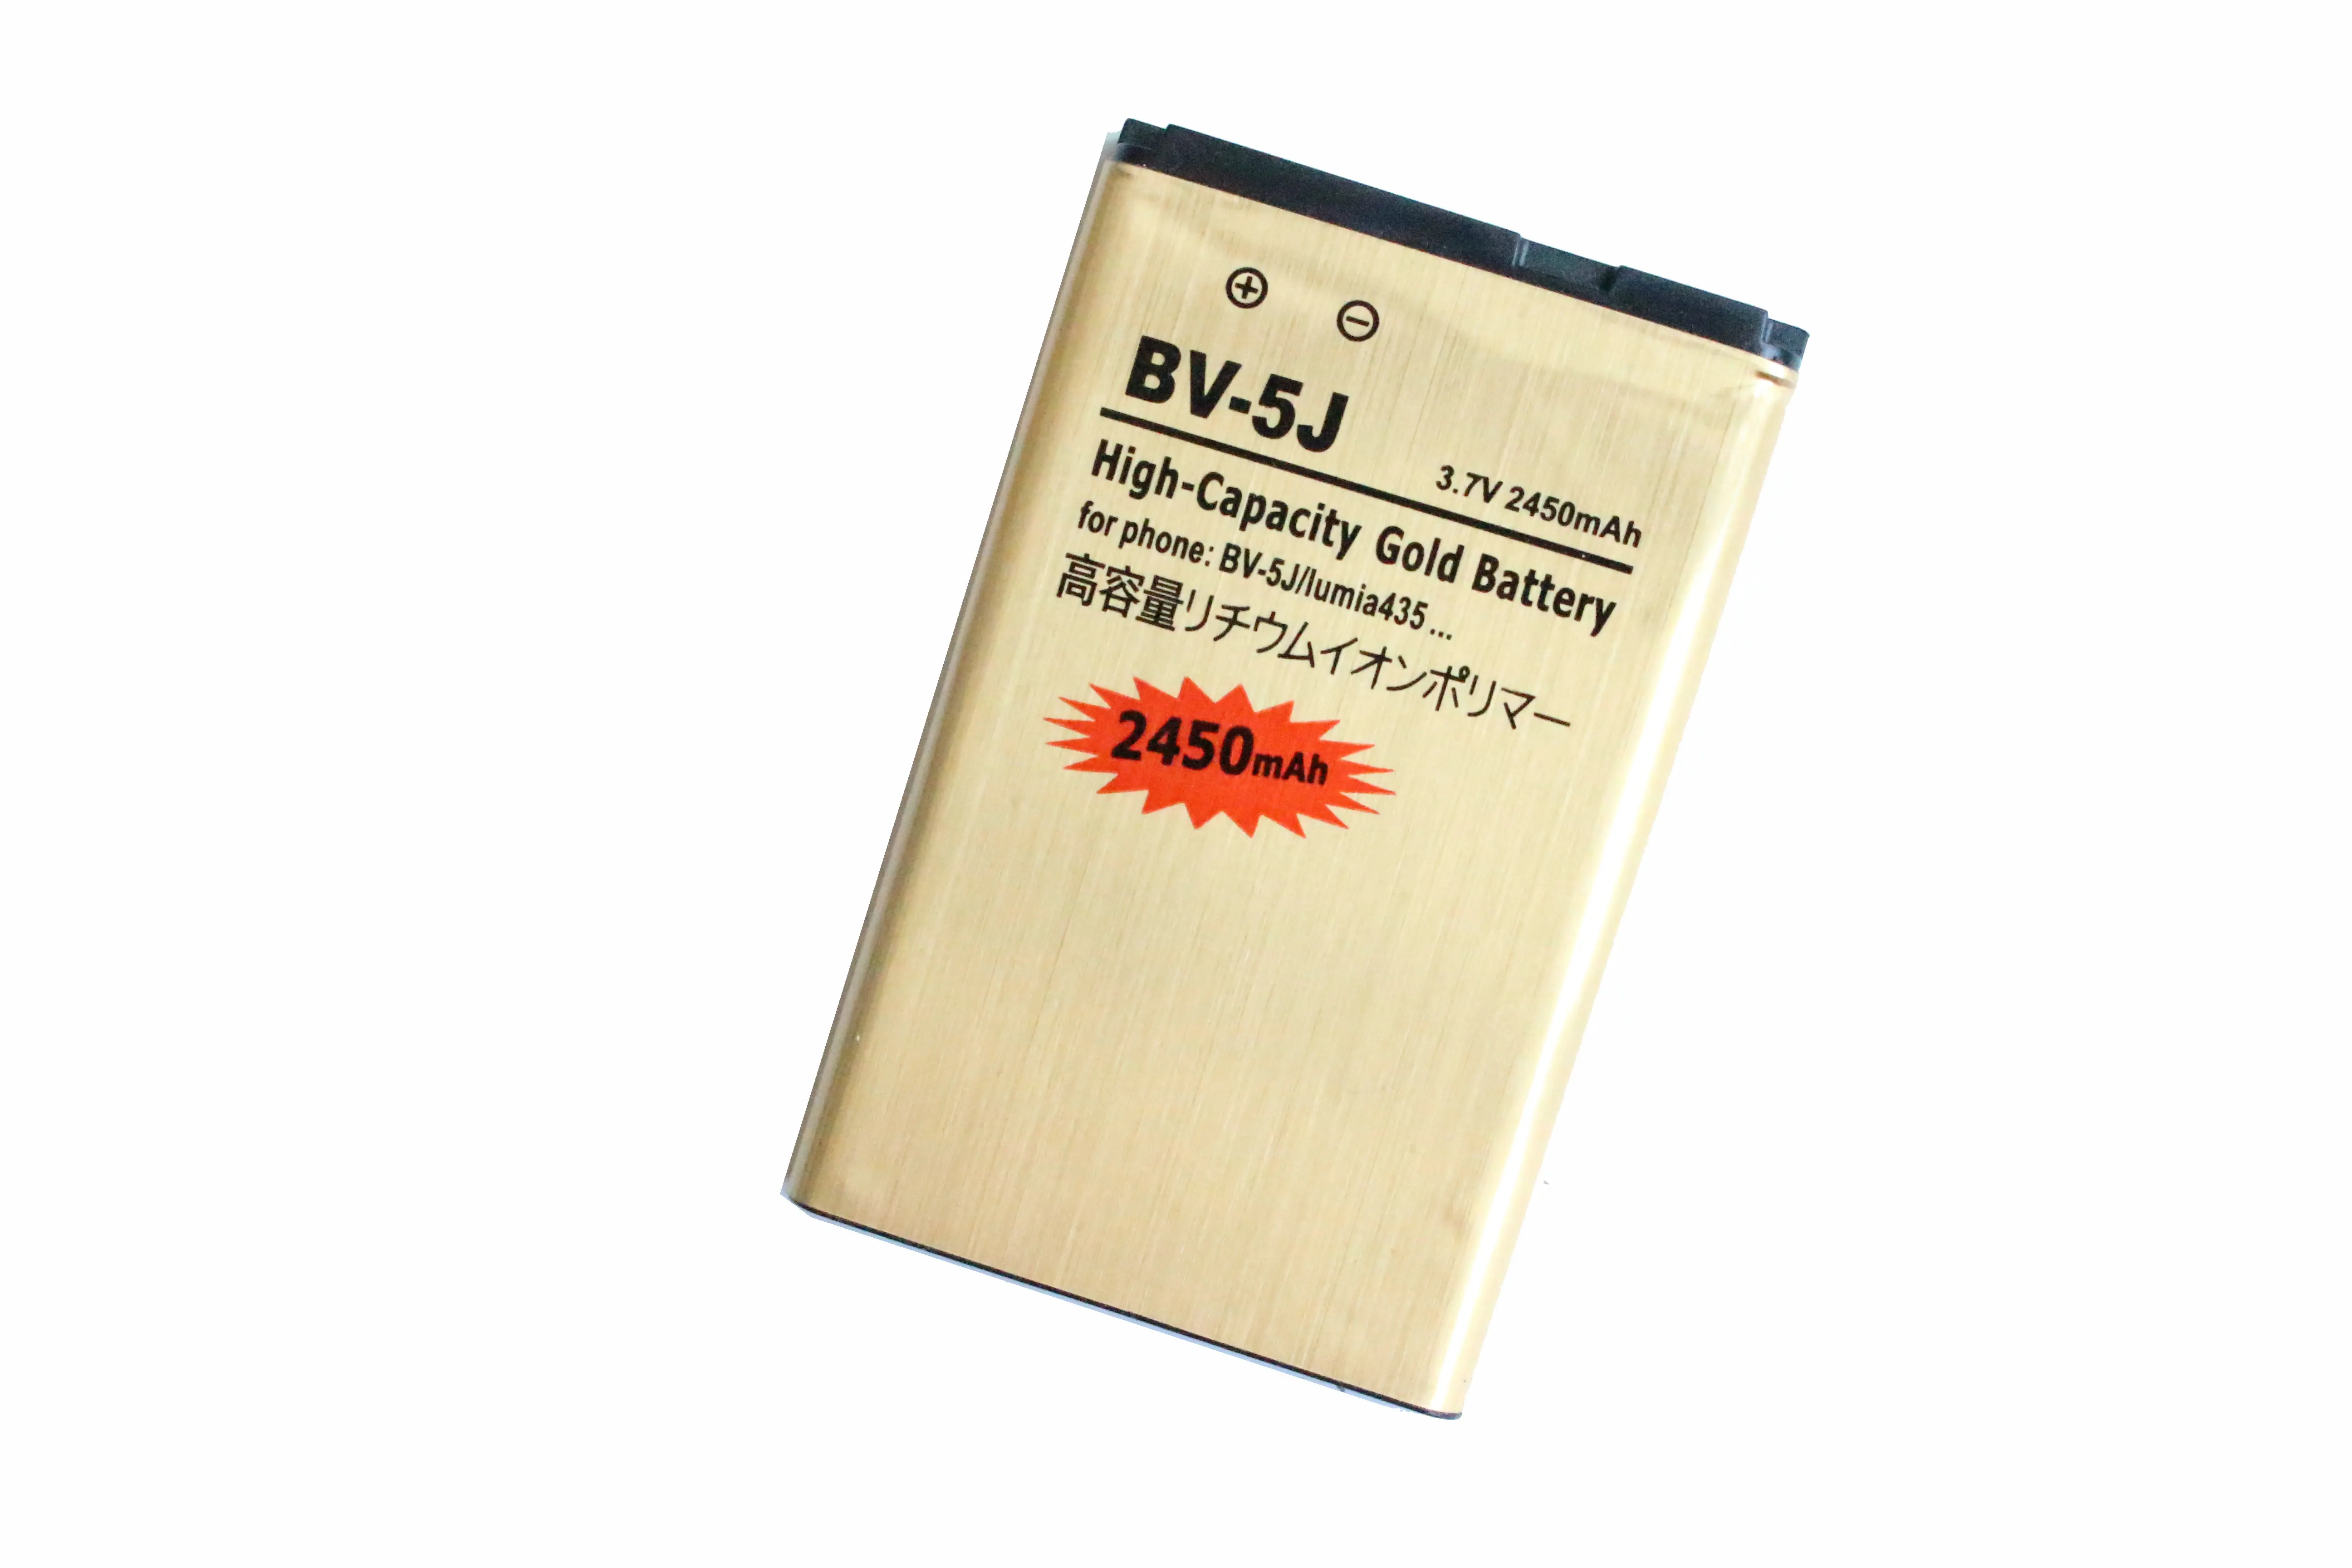 Ciszean 2450 мА/ч BV-5J / BV 5J BV5J золото замена батарея + зарядное устройство с ЖК-дисплеем